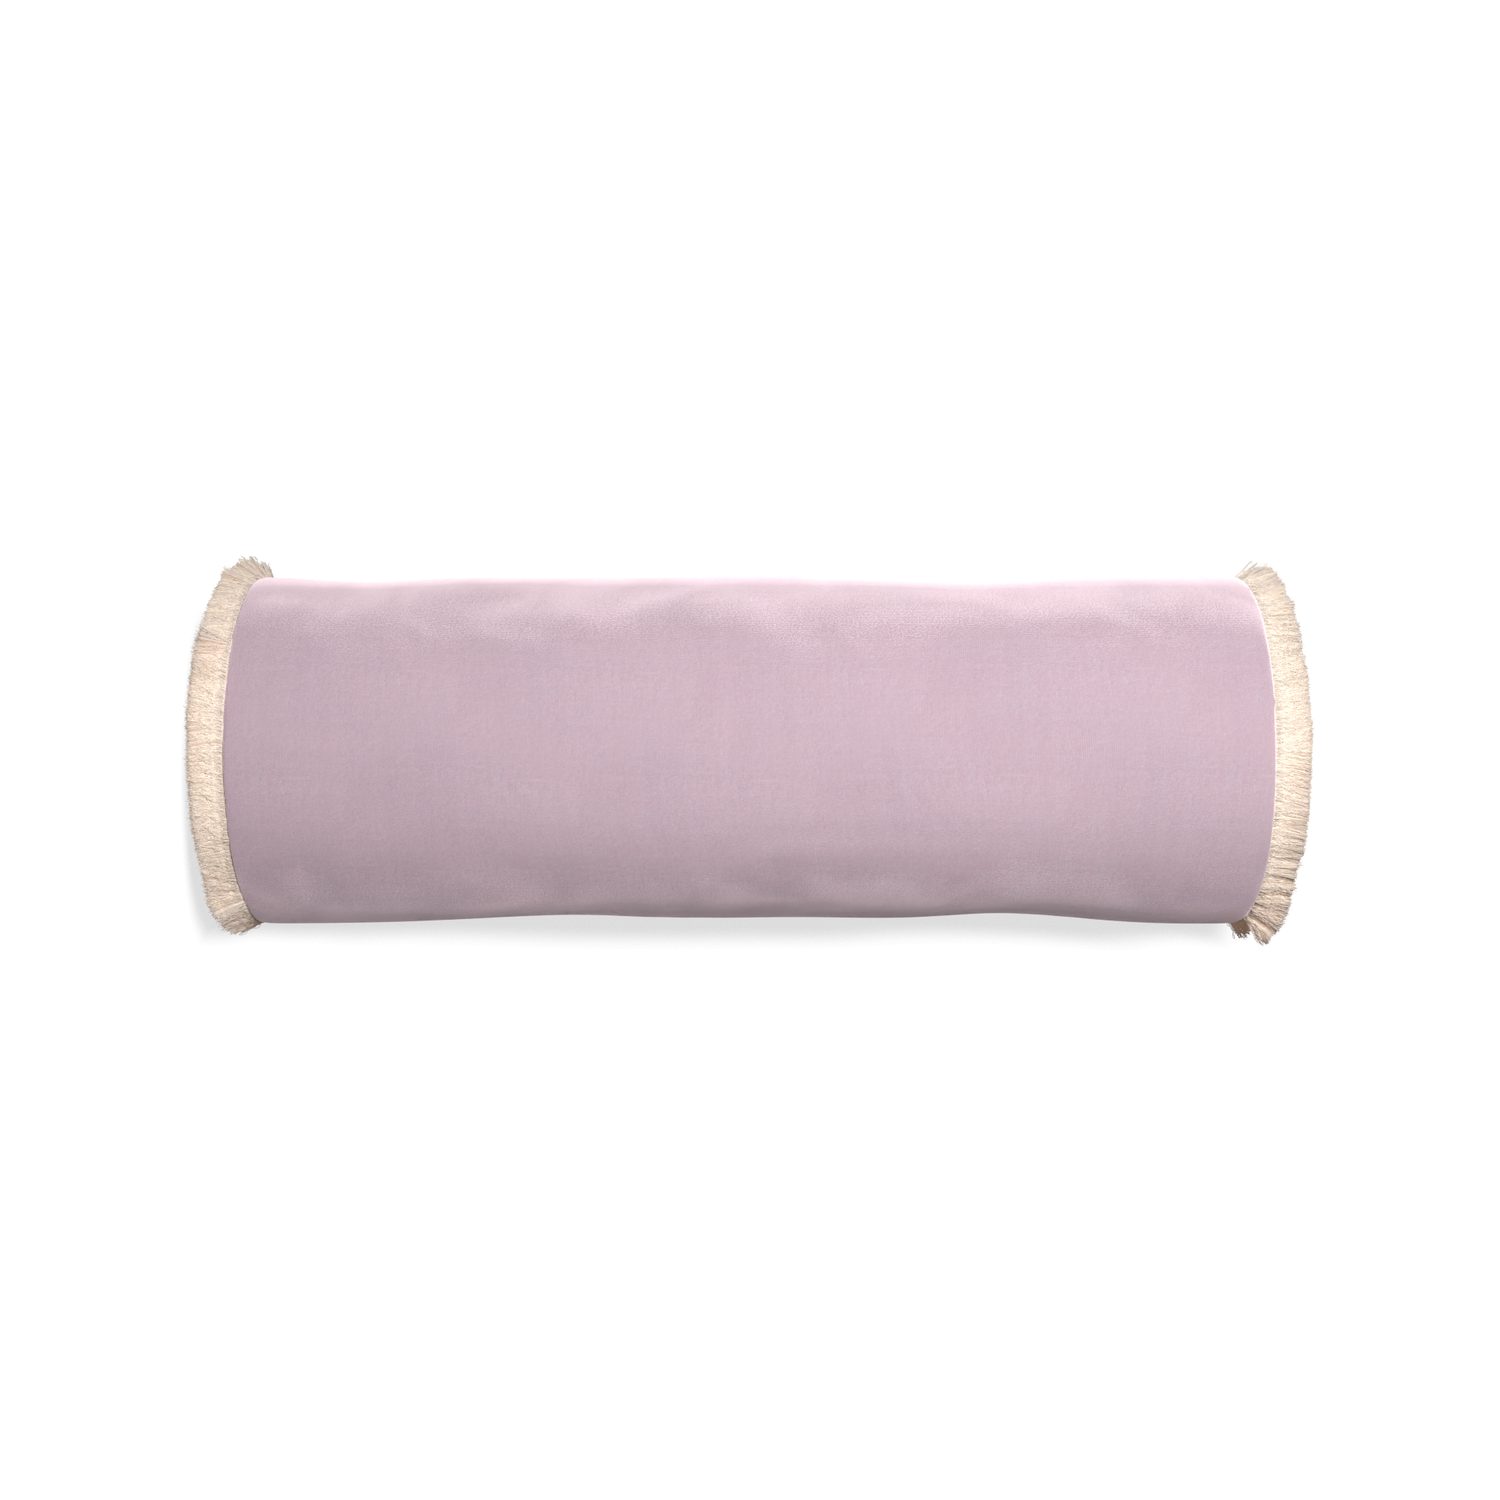 Bolster lilac velvet custom pillow with cream fringe on white background